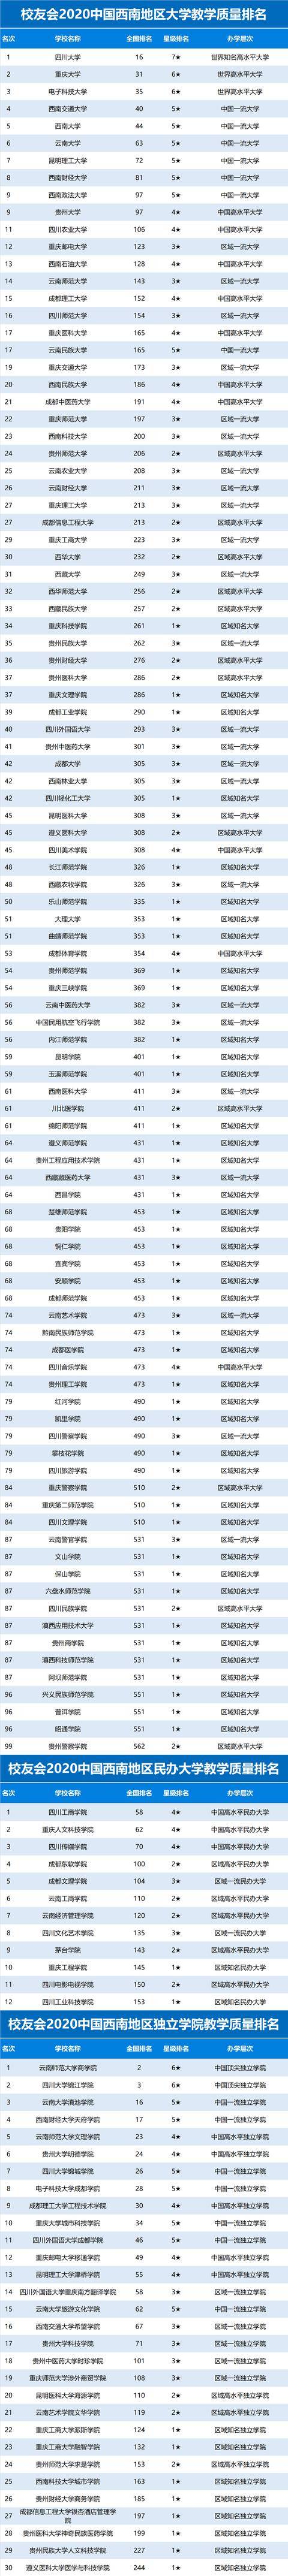 2020年高校排名四川_2020中国西部地区大学排名发布,西安交大第1,四川大